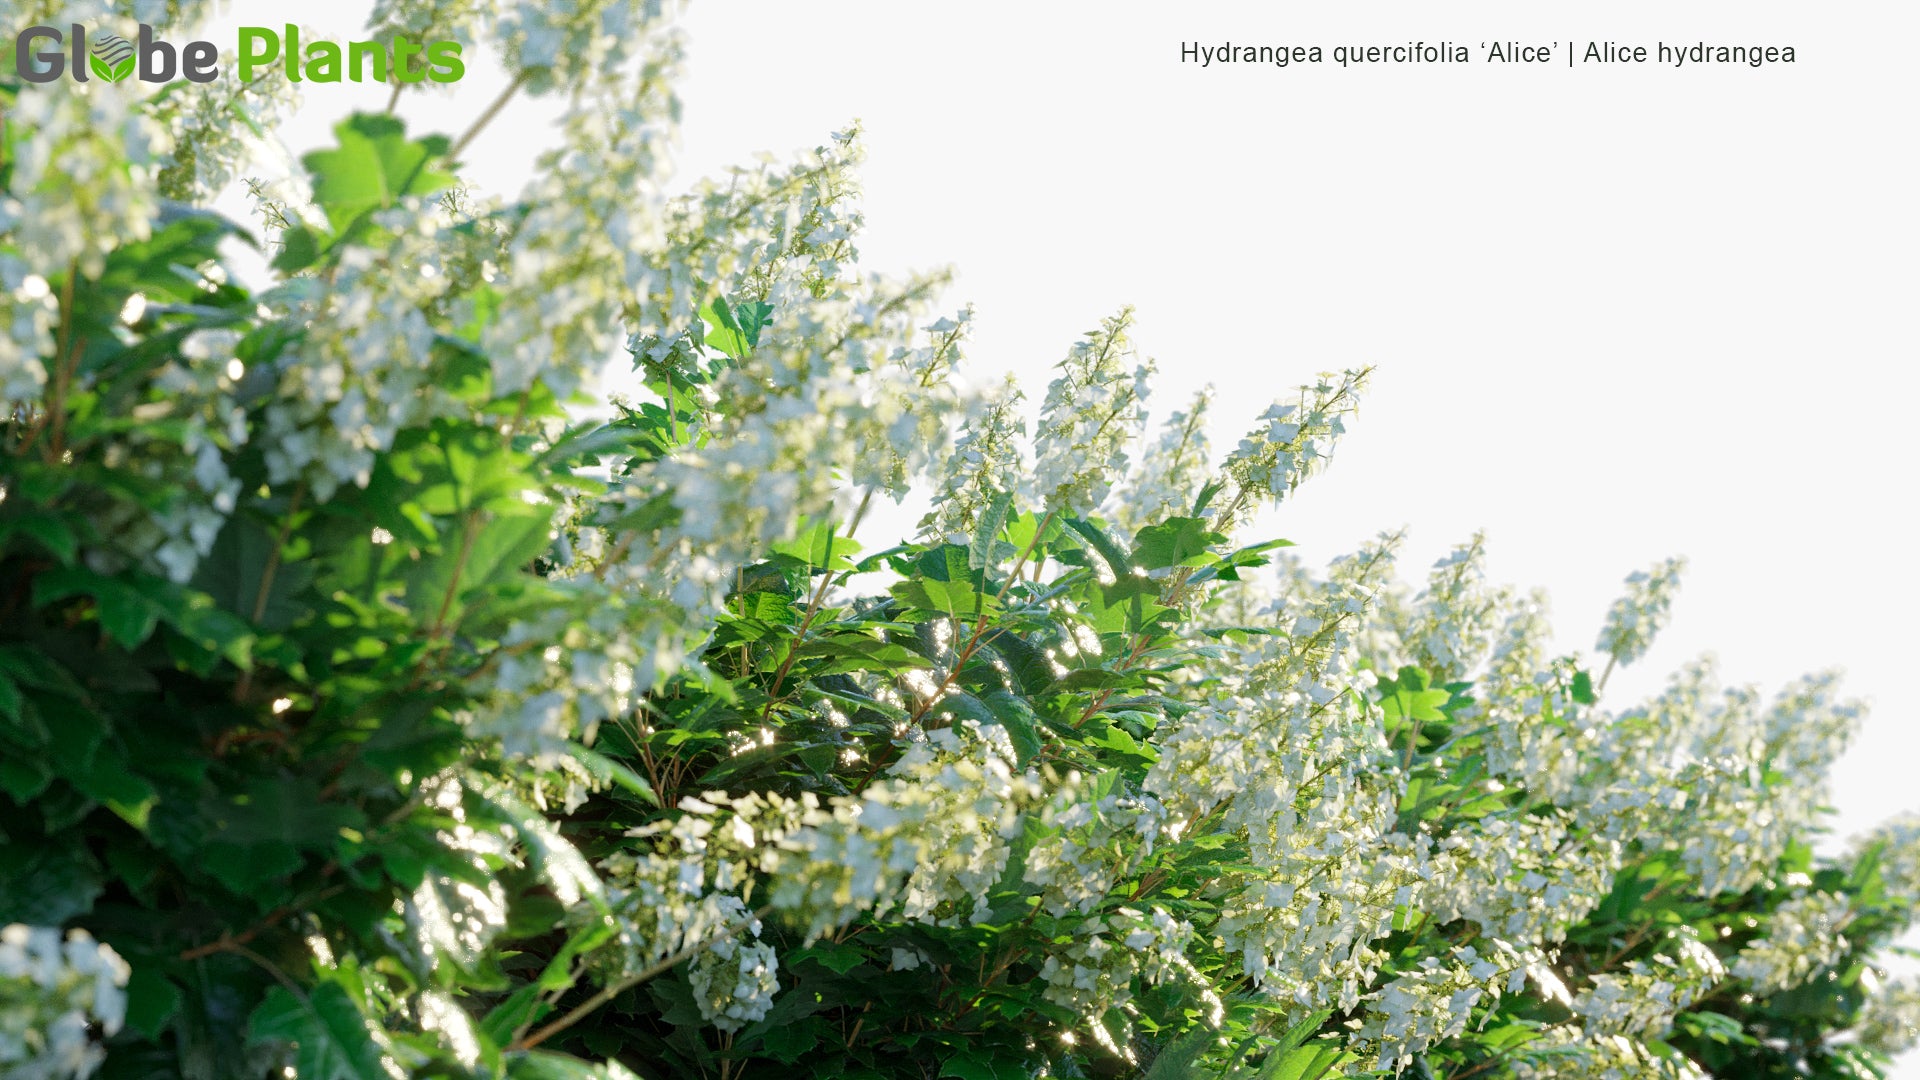 Hydrangea Quercifolia 'Alice' - Alice Hydrangea